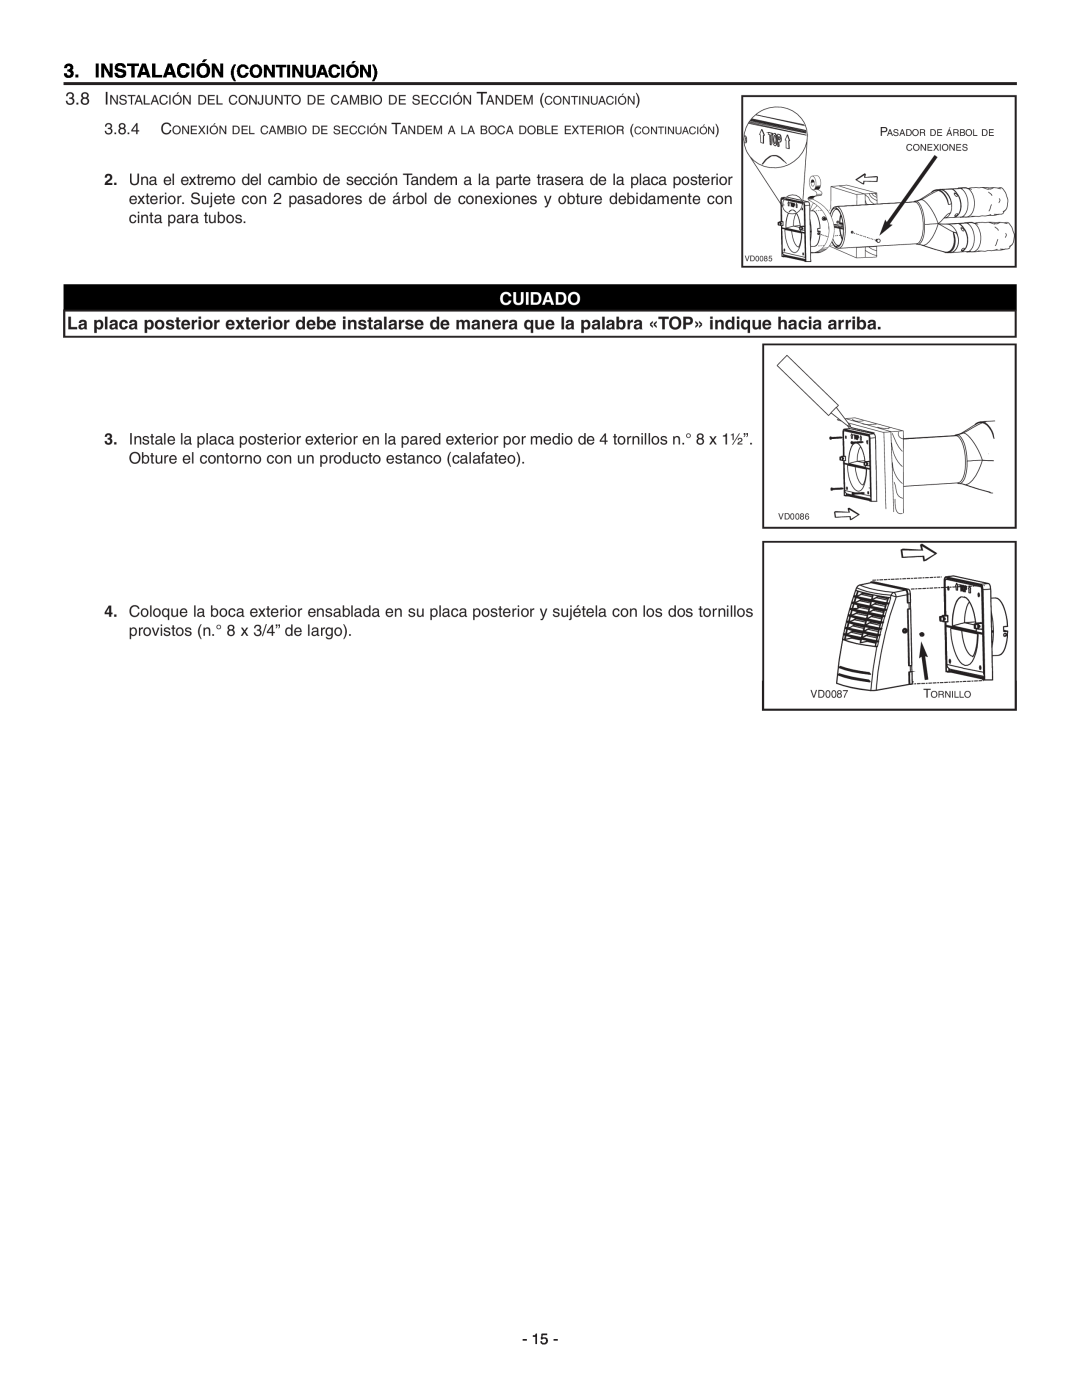 Broan HRV90HT, ERV90HCT installation instructions Instalación Continuación, Cuidado, VD0087TORNILLO 